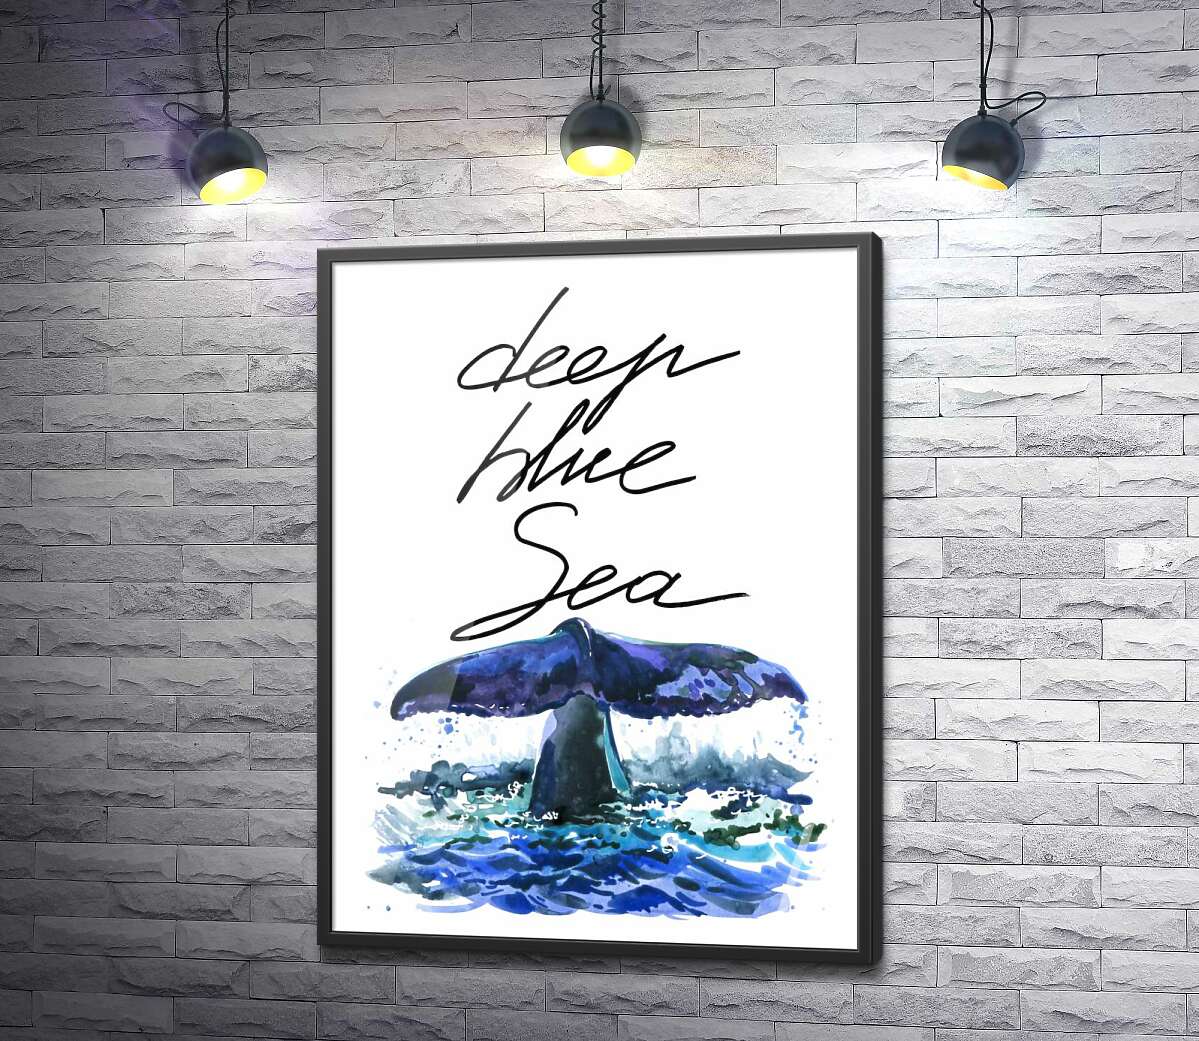 постер Хвост кита над водной поверхностью рядом с надписью "deep blue sea"